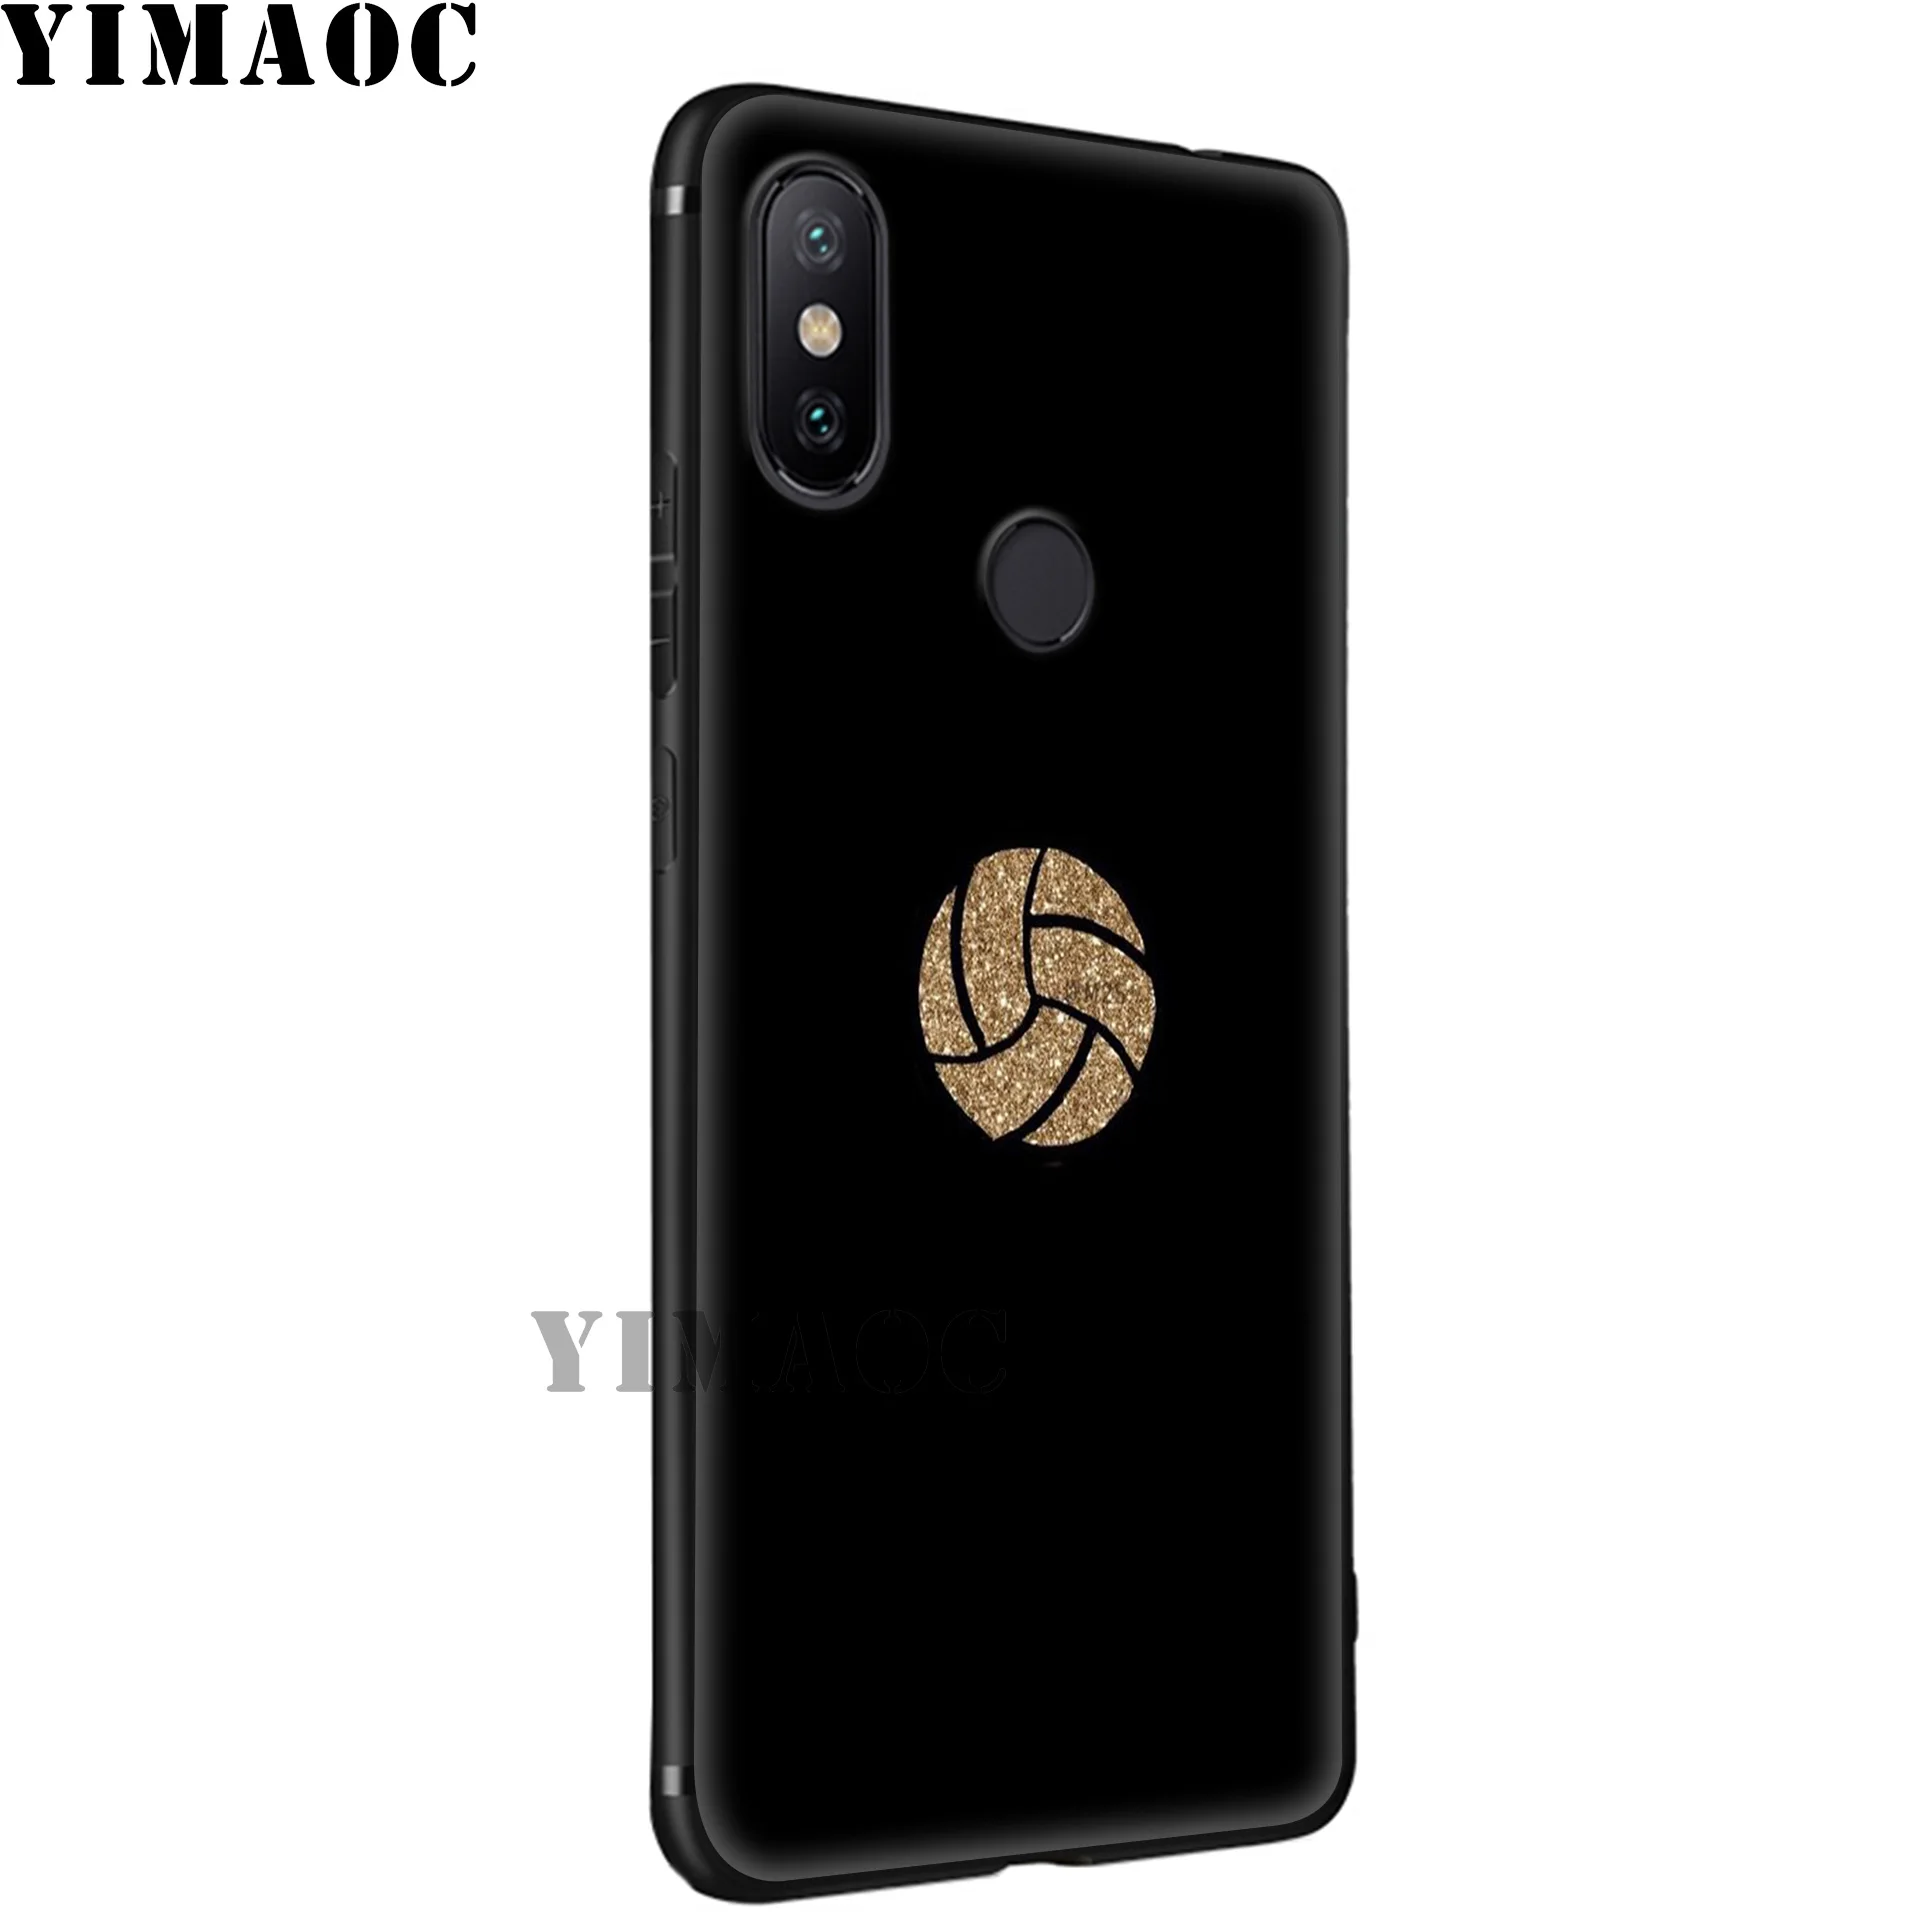 YIMAOC волейбольный спортивный Мягкий силиконовый чехол для Xiaomi Redmi 7A Note 7 6 6A 5 4 4X 4A 5A